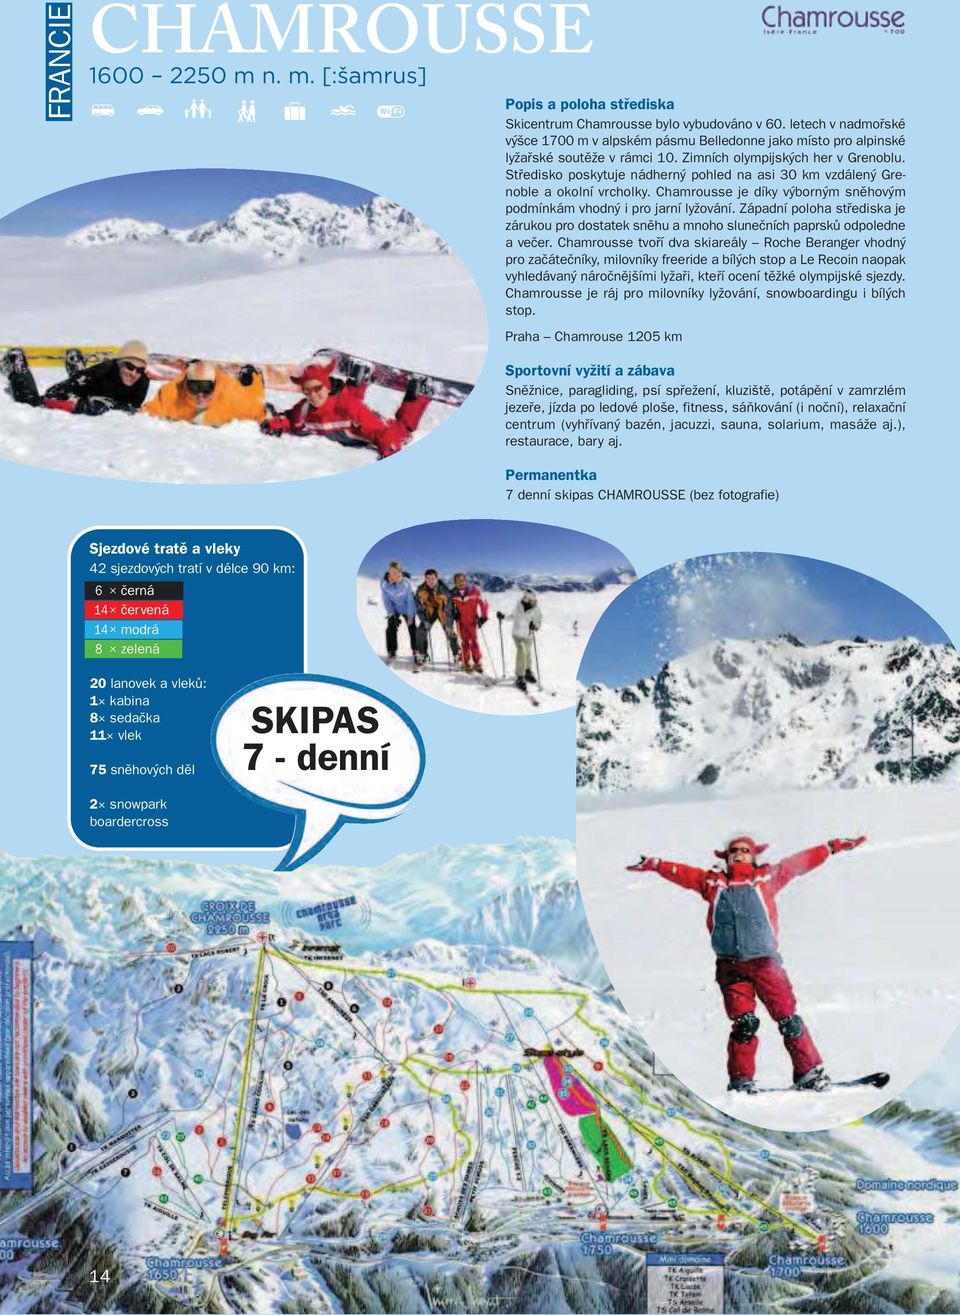 Středisko poskytuje nádherný pohled na asi 30 km vzdálený Grenoble a okolní vrcholky. Chamrousse je díky výborným sněhovým podmínkám vhodný i pro jarní lyžování.